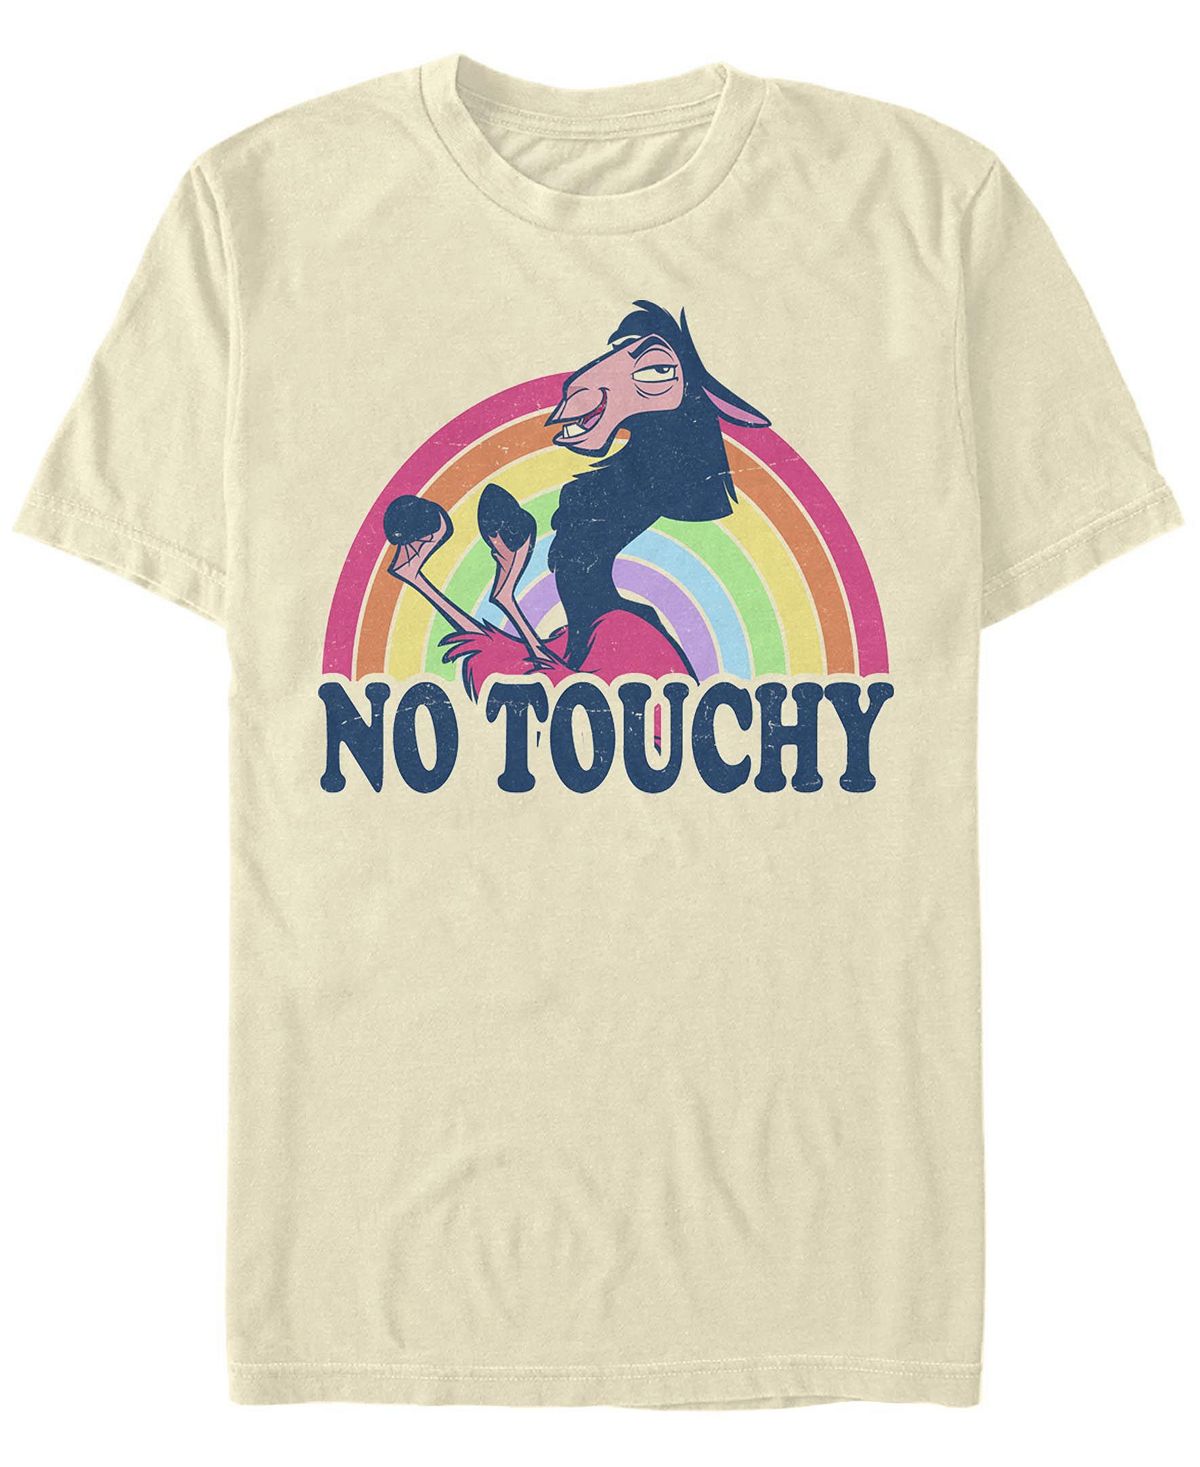 Мужская футболка с круглым вырезом rainbow kuzco с короткими рукавами Fifth Sun мужская футболка с короткими рукавами rainbow monster box up scooby doo fifth sun черный